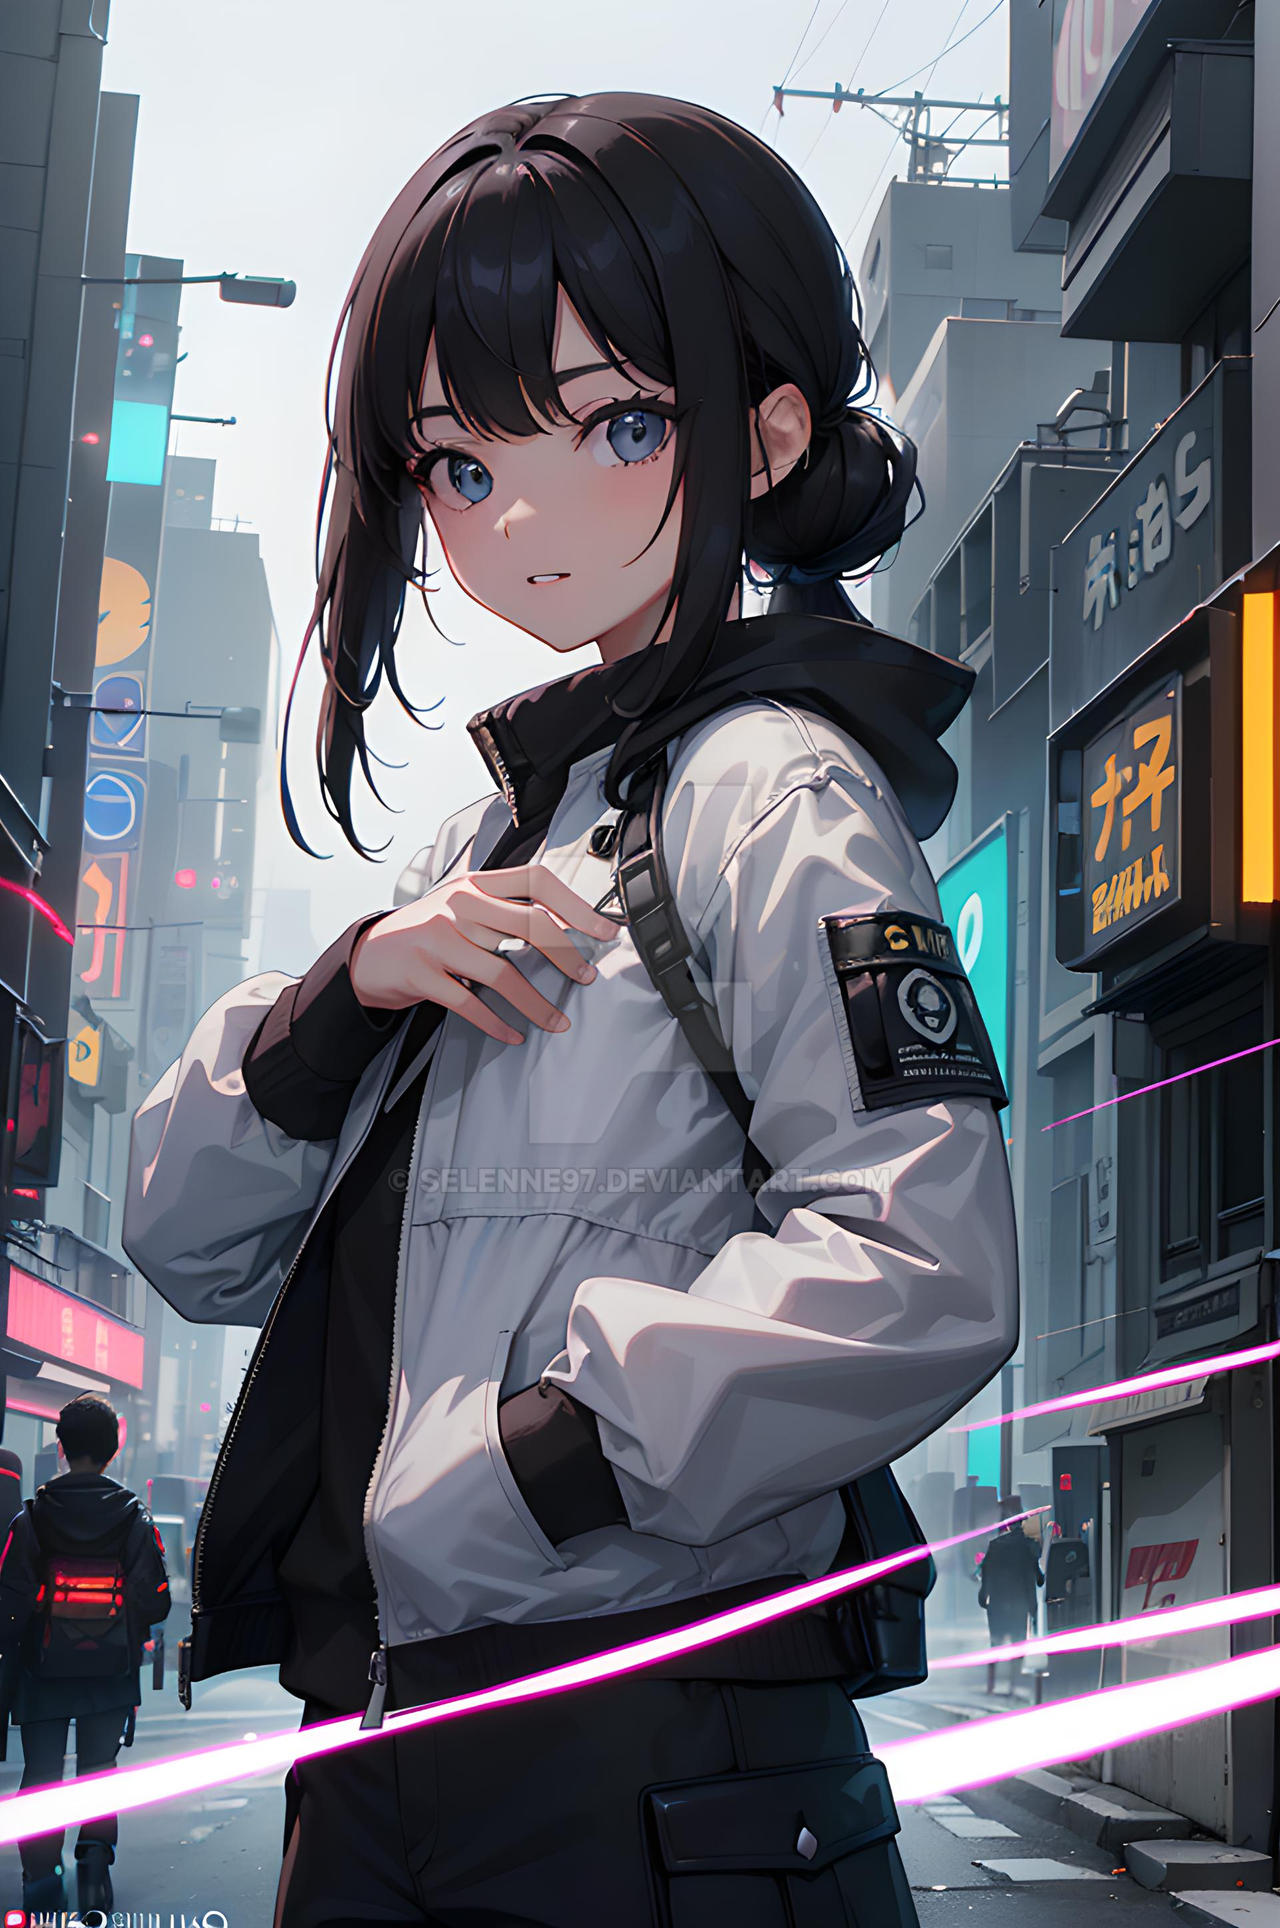 anime girl by selenne97 on DeviantArt